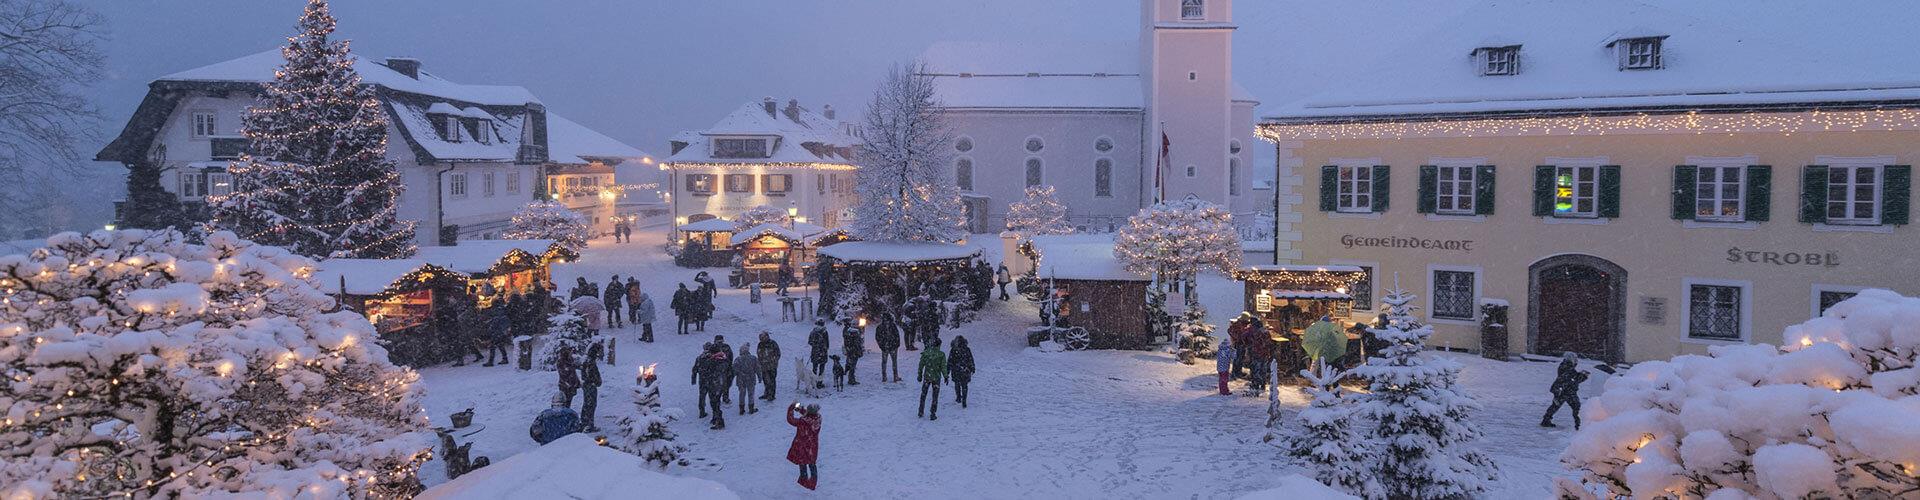 Winterbild Gemeinde Strobl